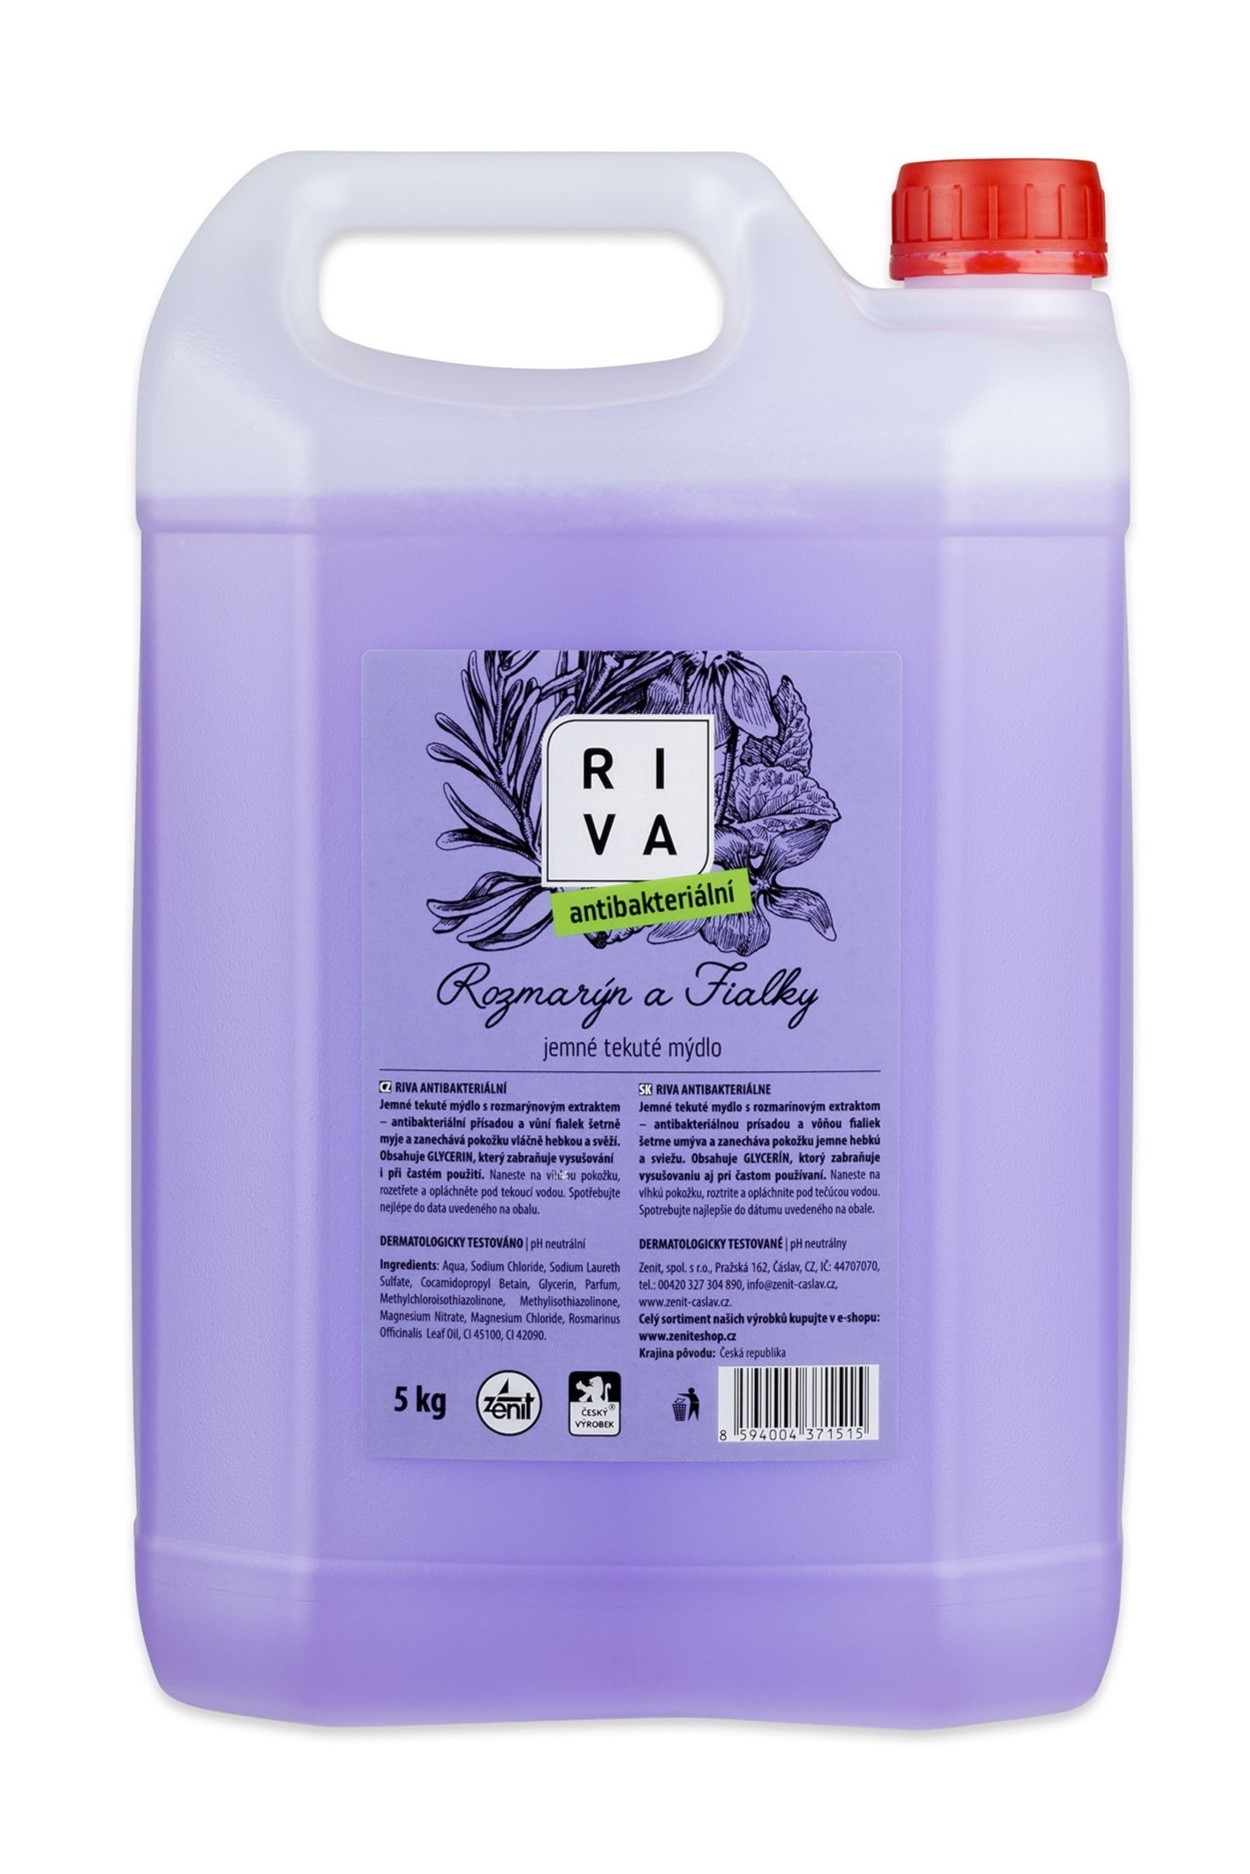 Riva tekuté mýdlo 5 kg Rozmarýn a Fialky - Antibakteriální